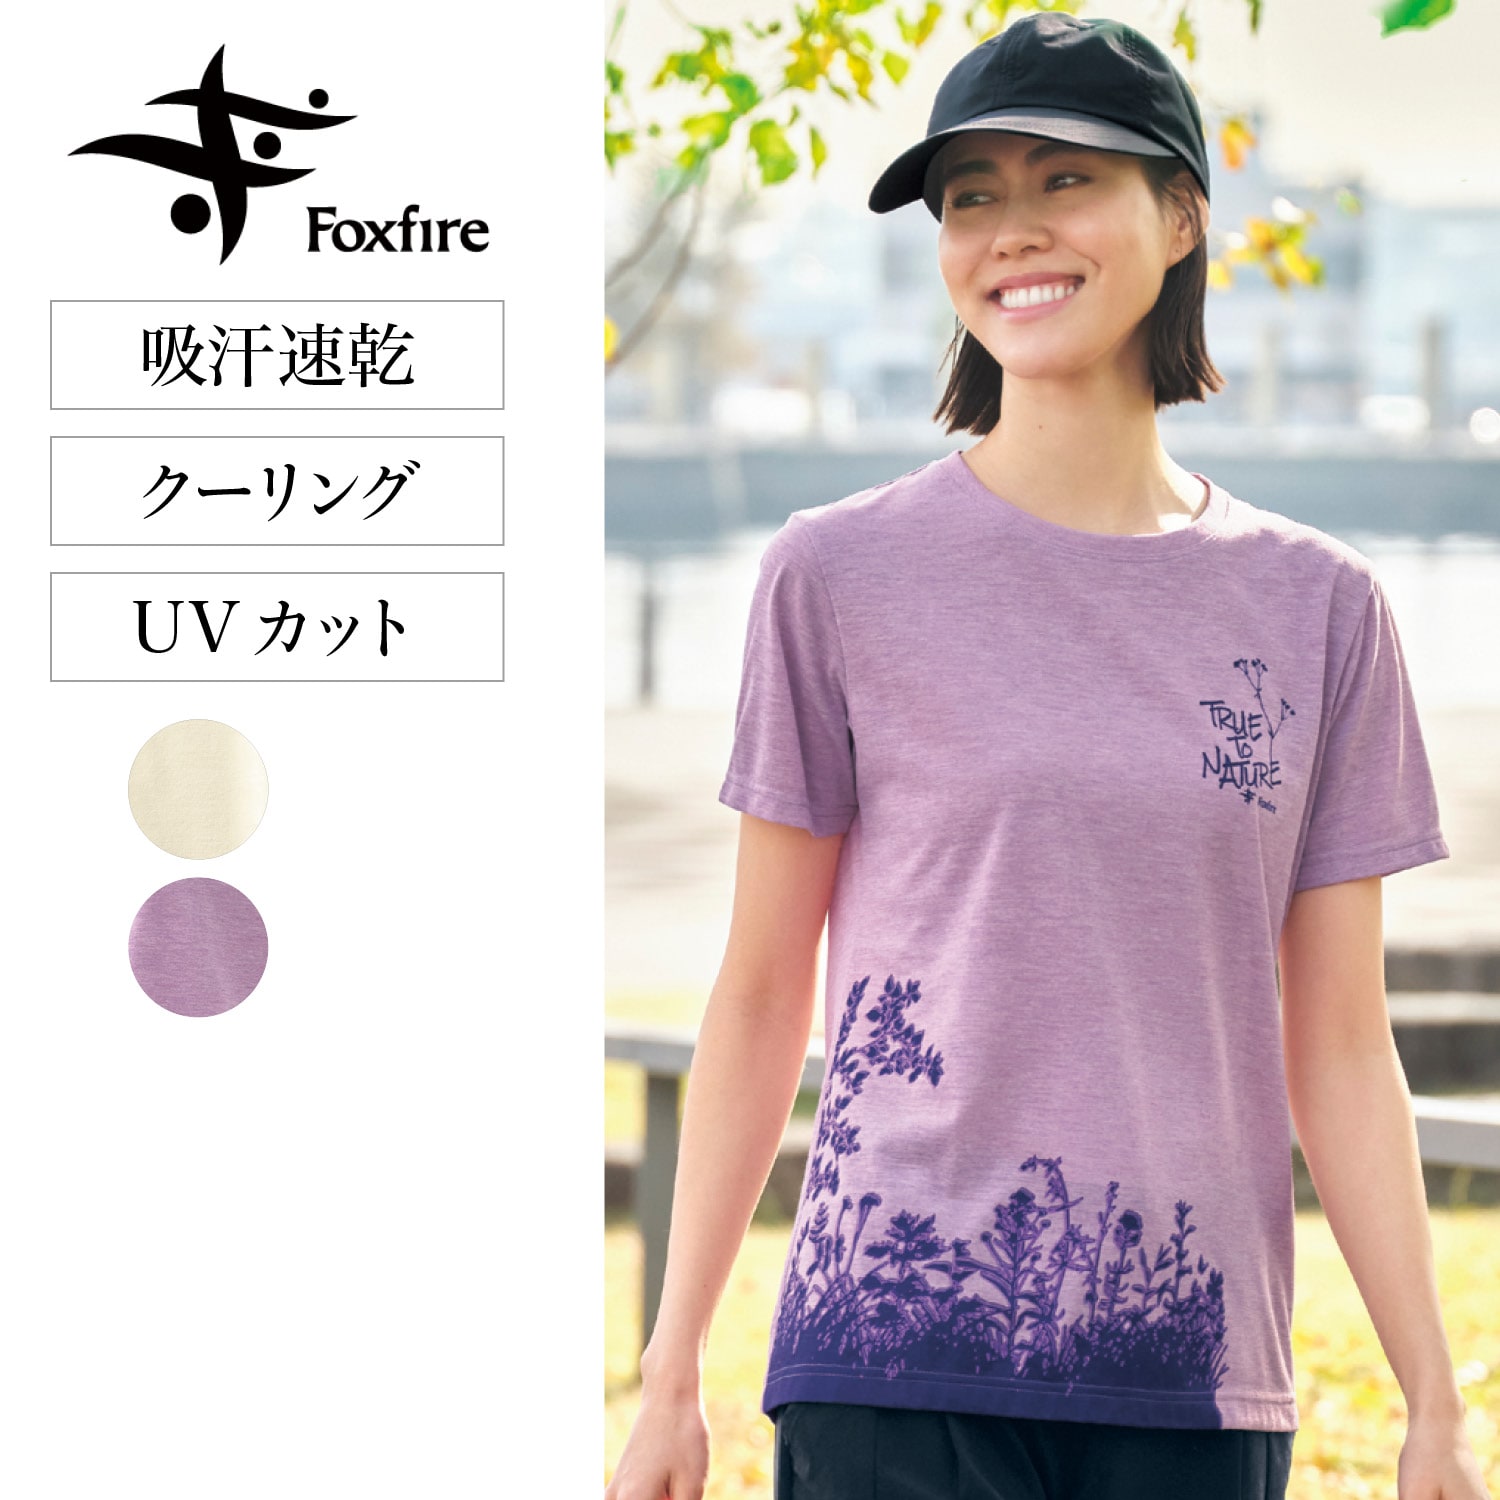 【フォックスファイヤー/Foxfire】コカゲシールド プリントTシャツ